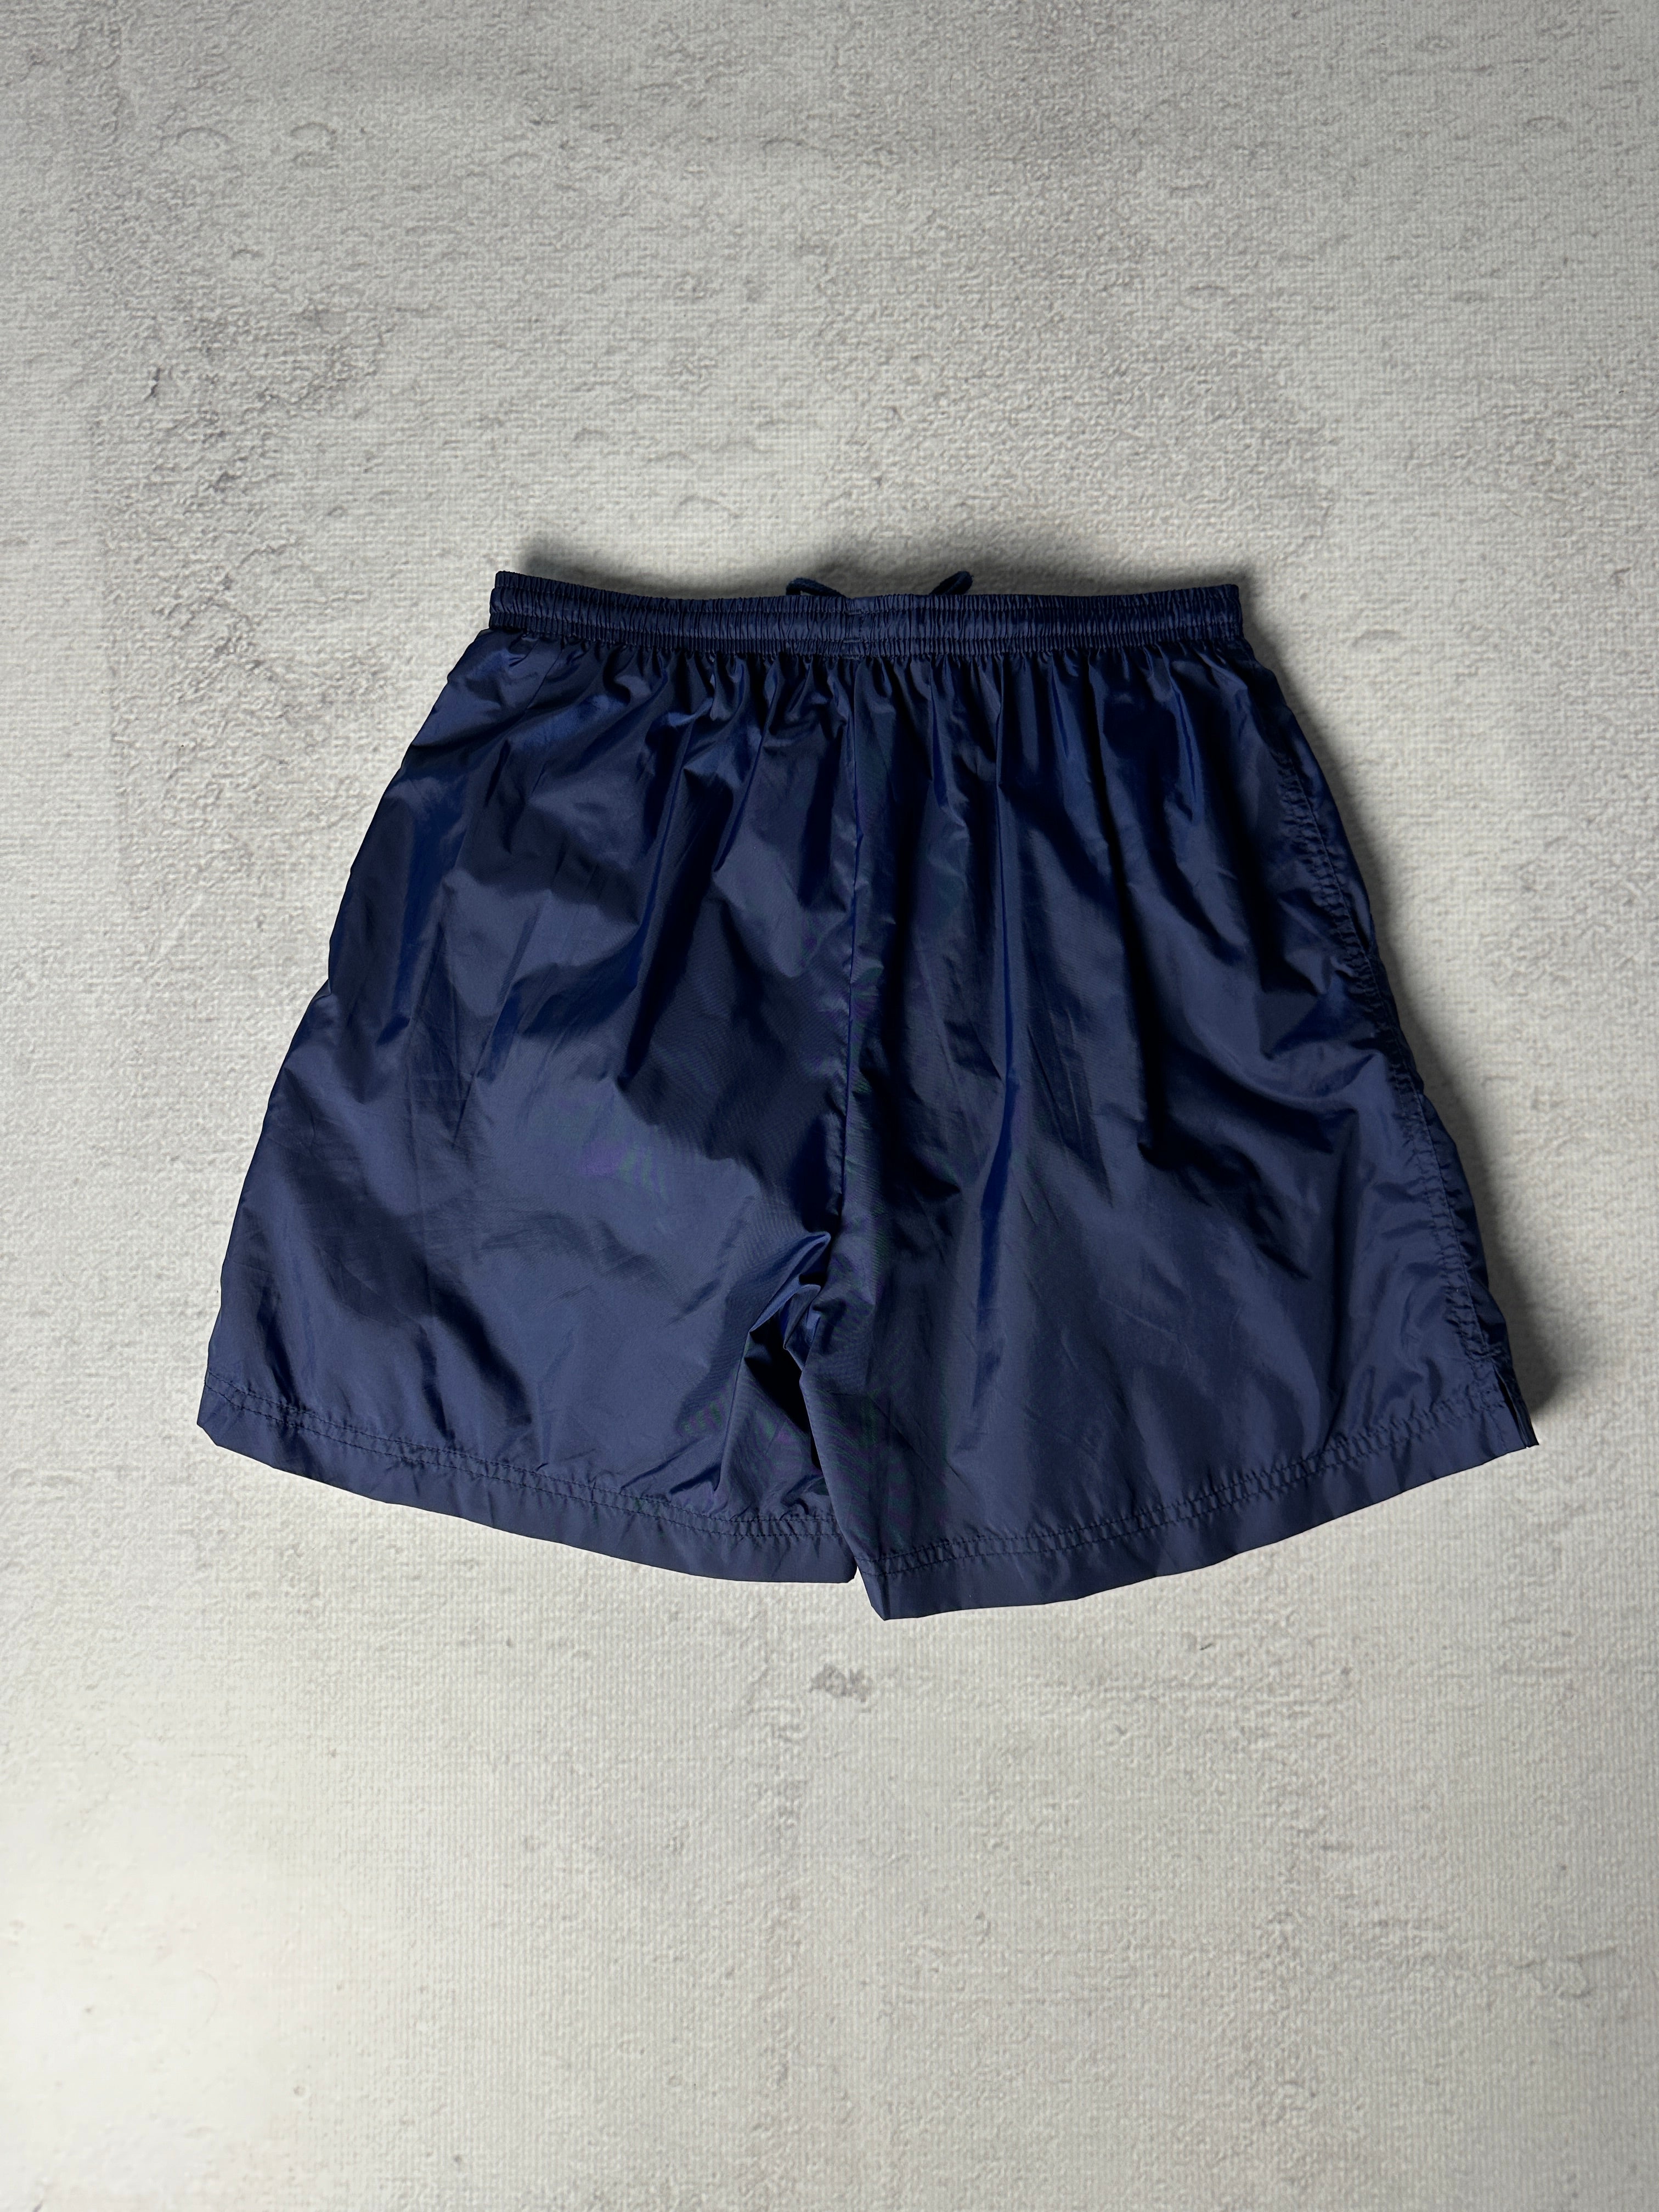 Vintage Adidas Track Shorts - Men's Medium